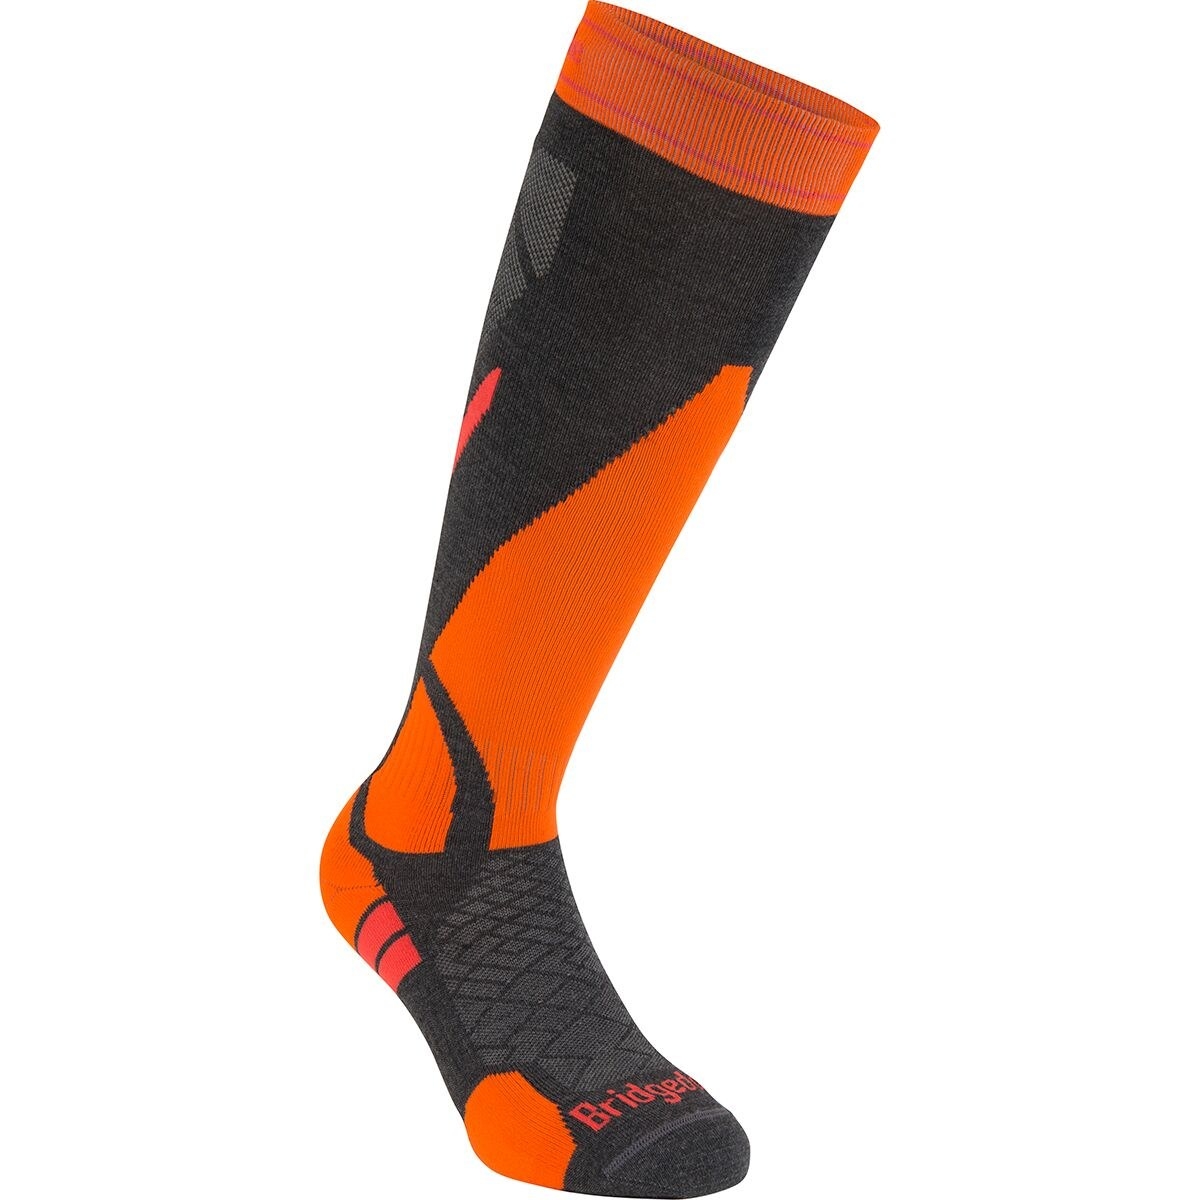 The orange calf high ski sock